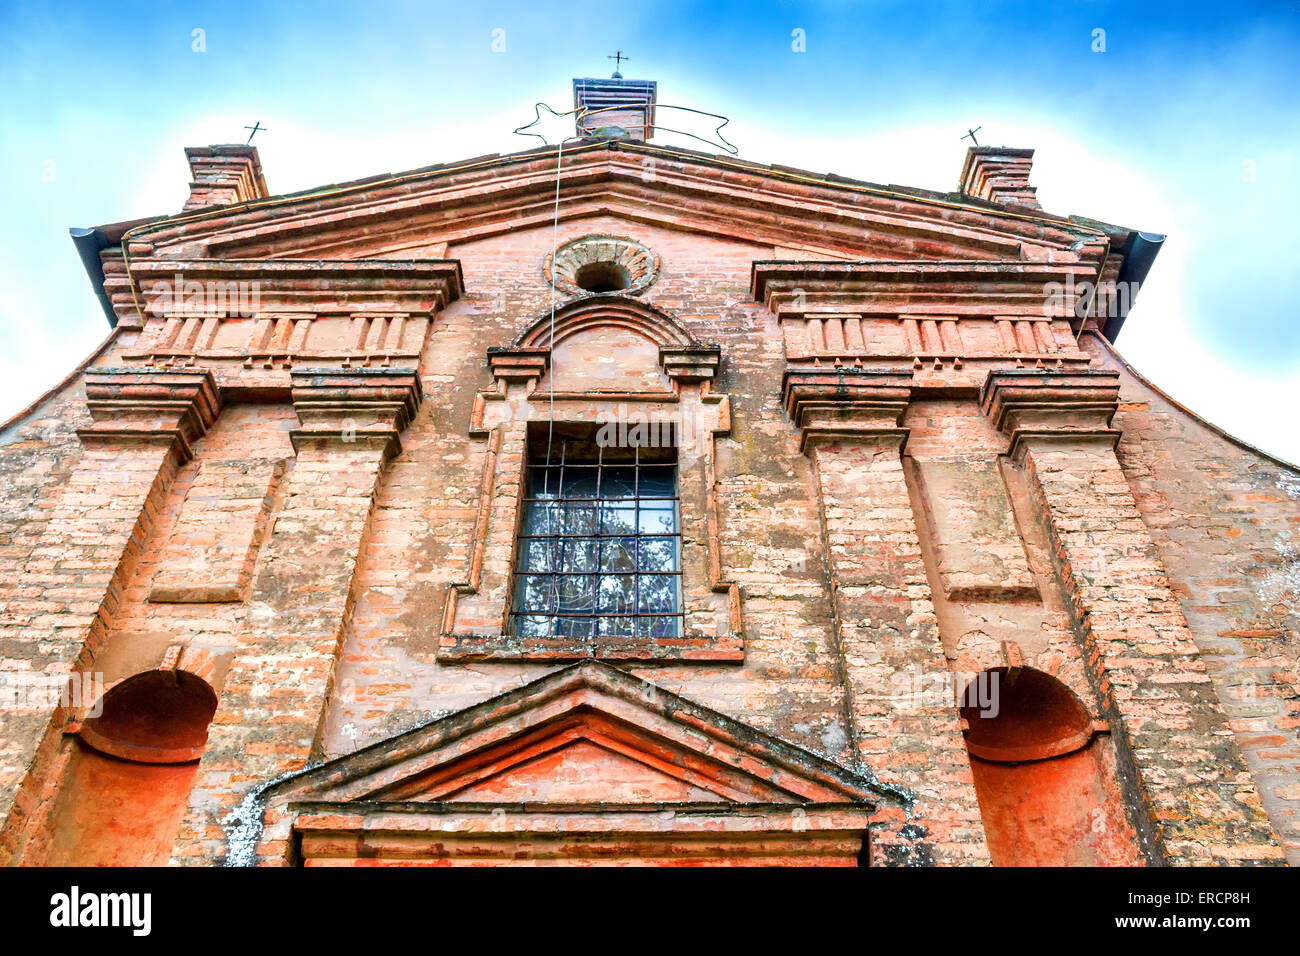 Façade d'une Brickwall XVII siècle , église dédiée à Notre-Dame de la conception dans le village d'Belricetto près de Ravenne dans la campagne d'Émilie-Romagne en Italie du Nord : sa construction a commencé en 1686 Banque D'Images